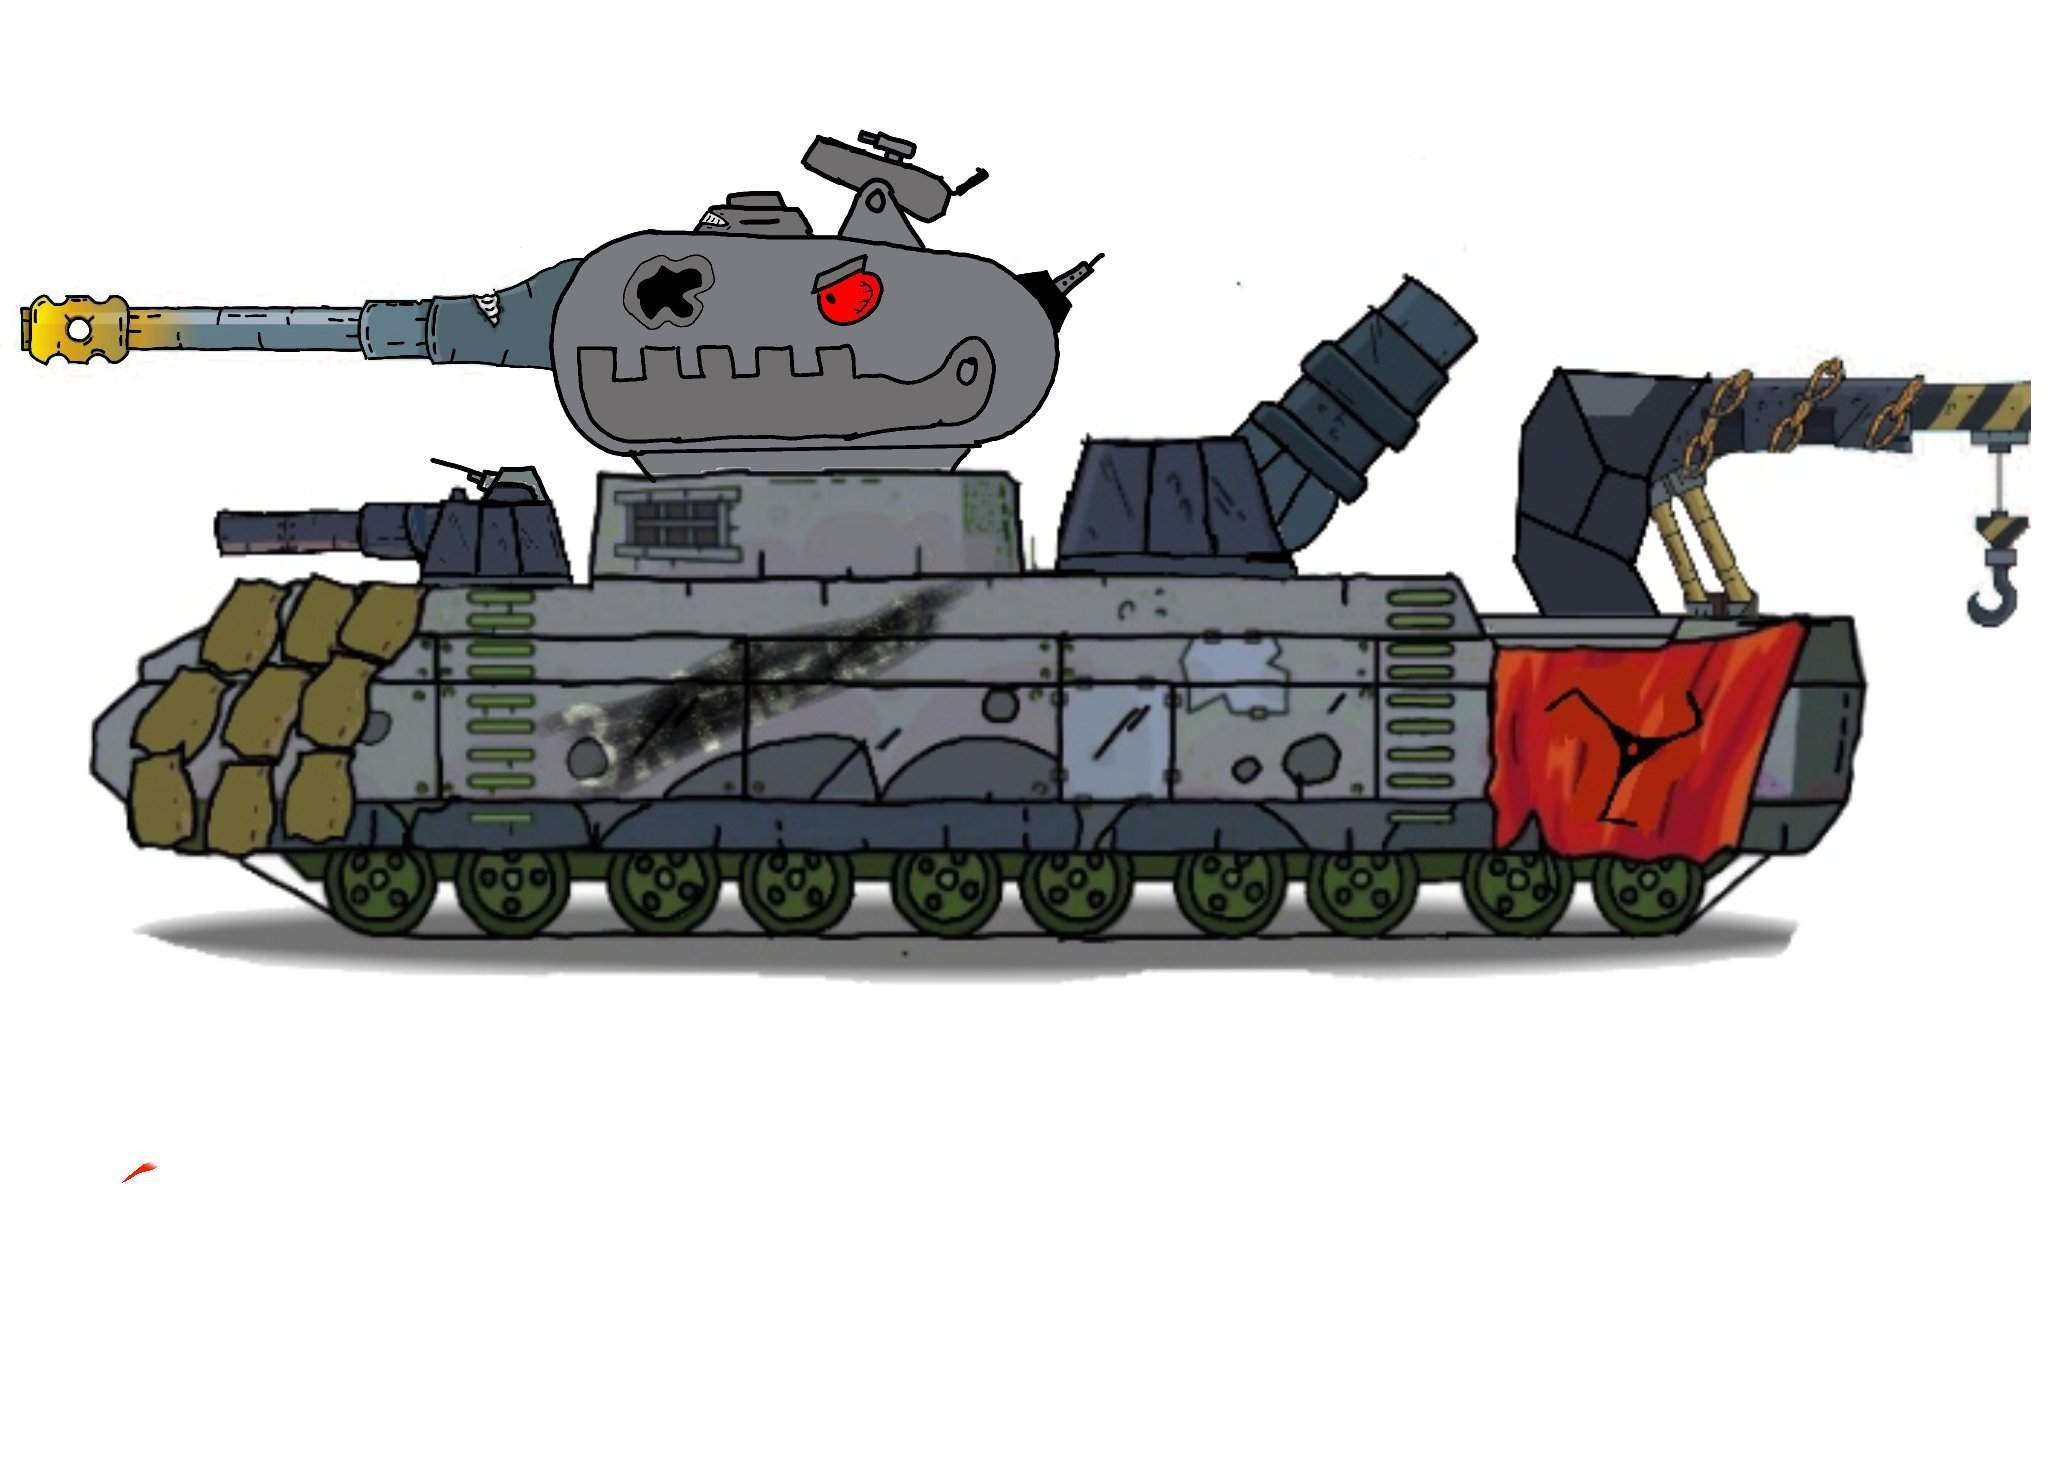 Немецкие танки геранда. Кв-44 танк Геранд.